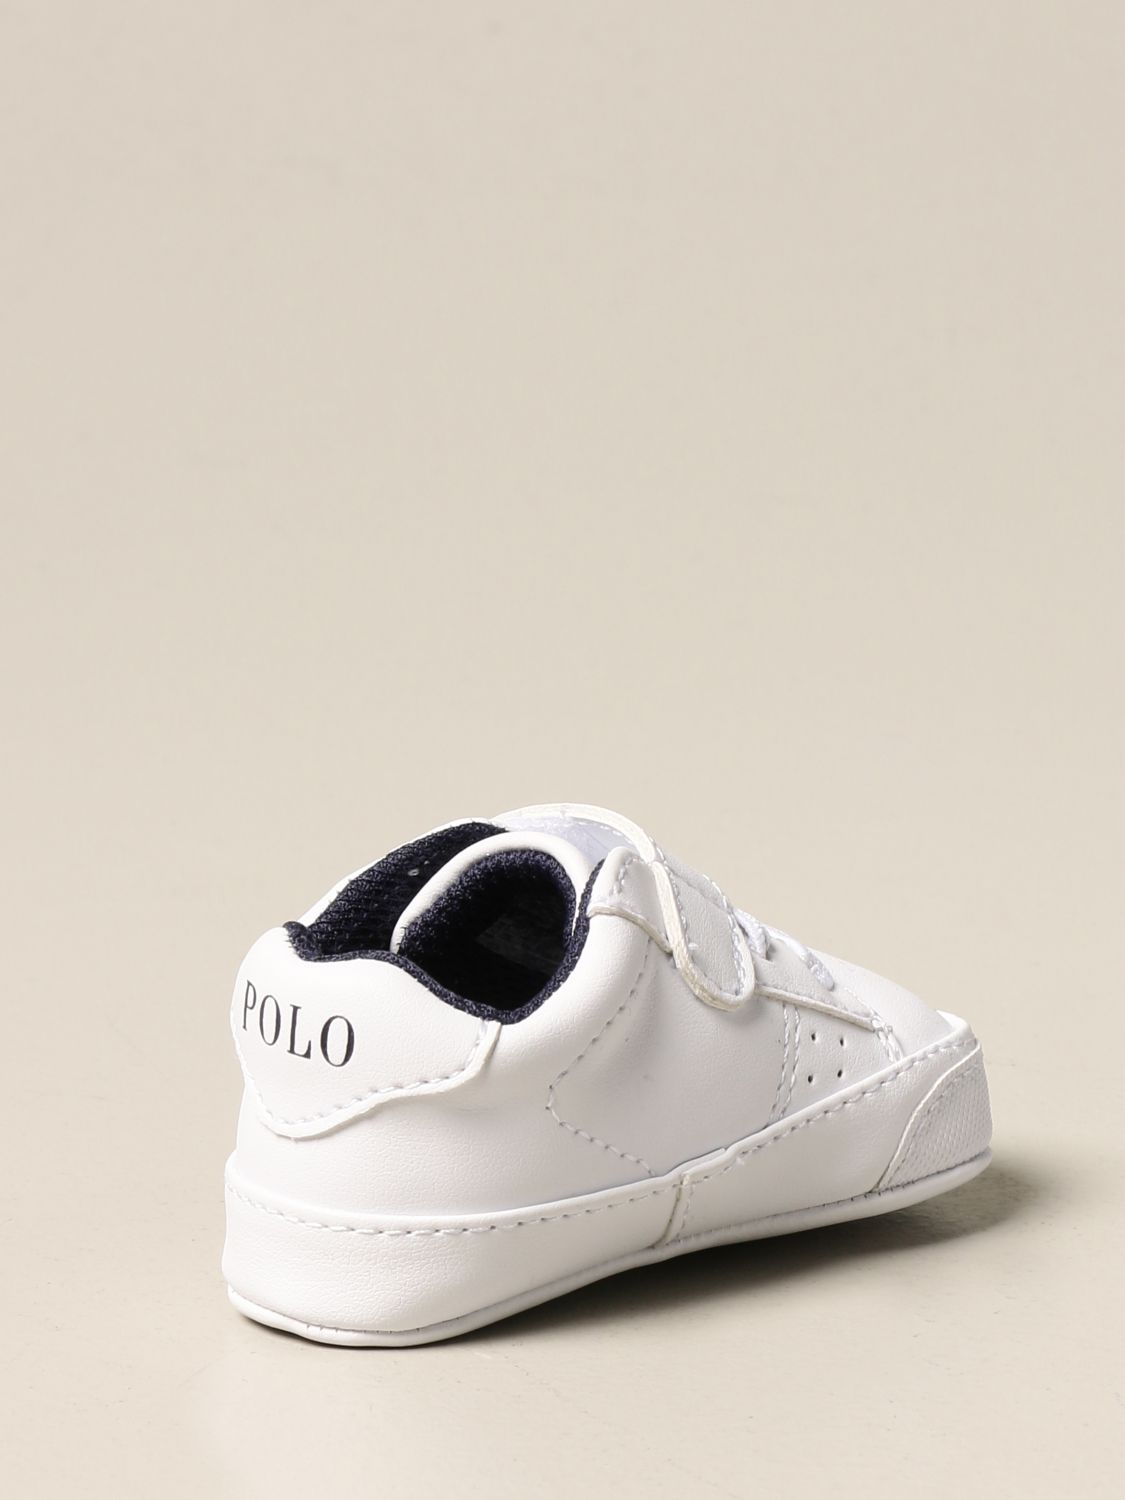 polo lauren shoes